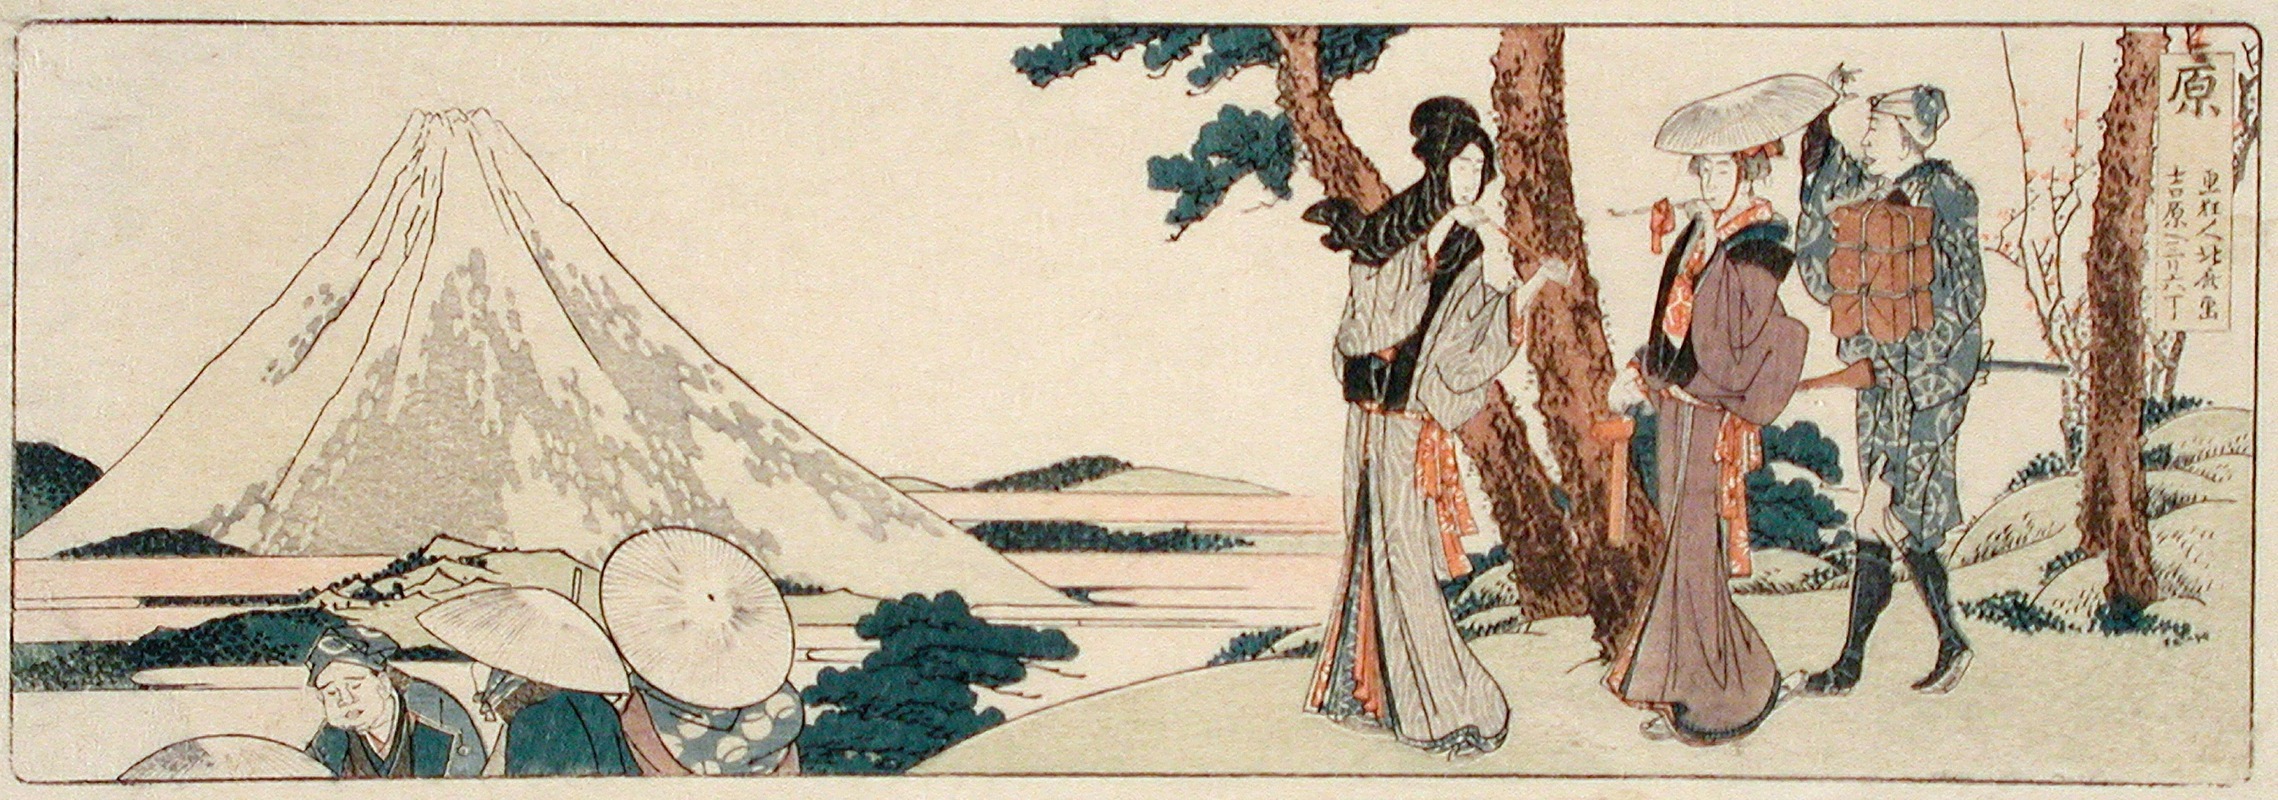 Katsushika Hokusai - Hara. 3 ri and 6 chō to Yoshiwara